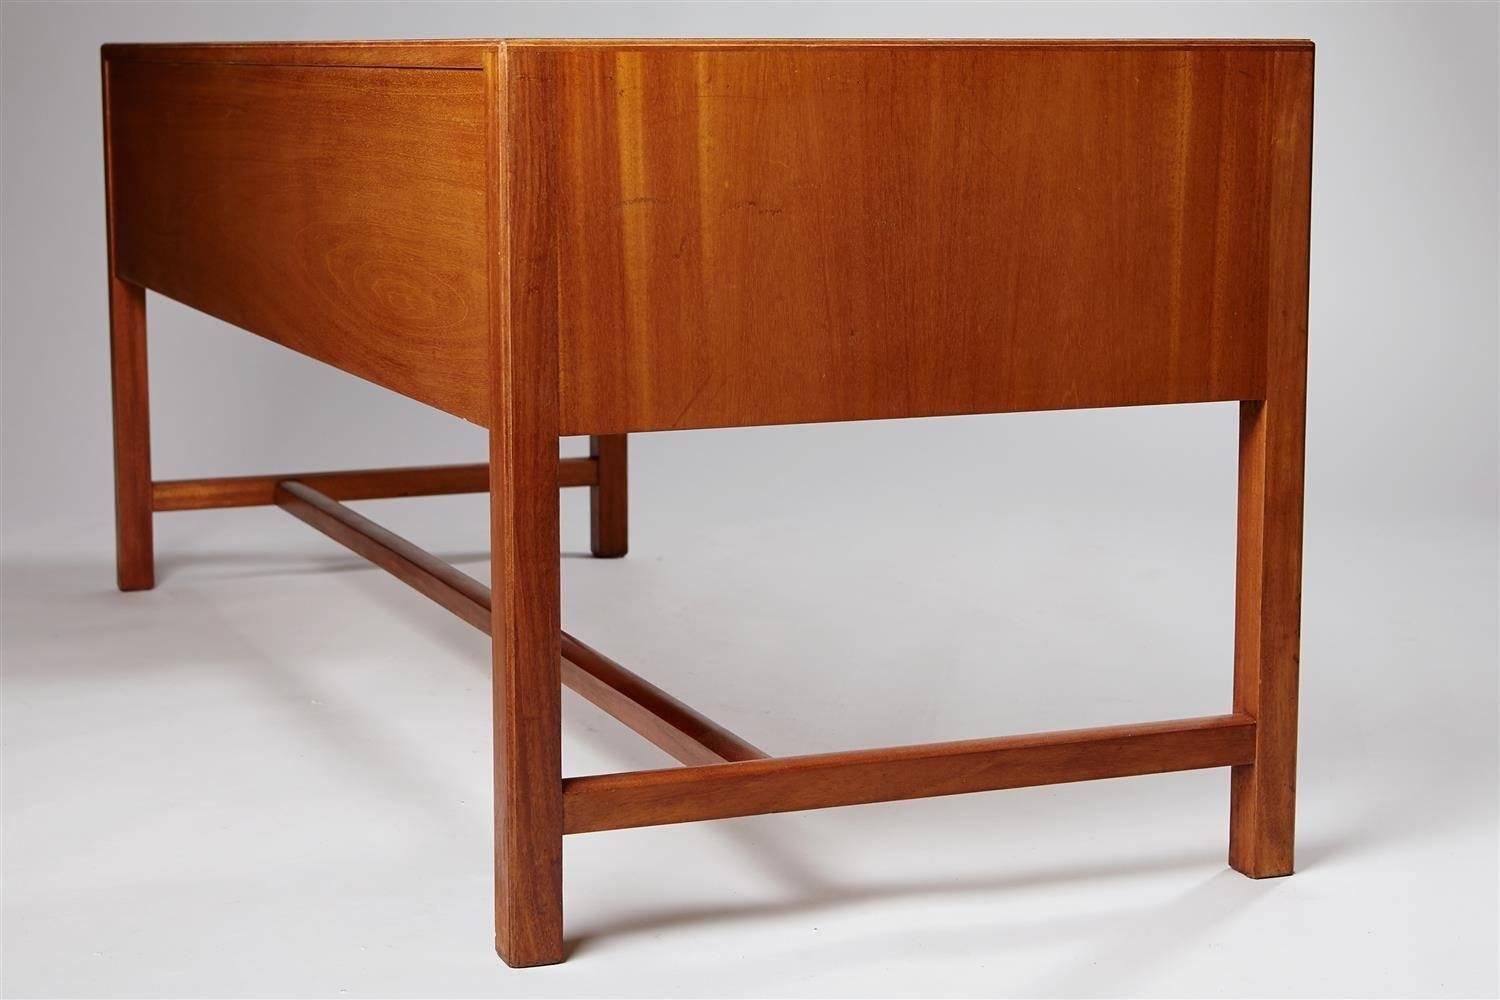 Brass Desk Designed by Josef Frank for Haus Und Garten, Austria, 1932